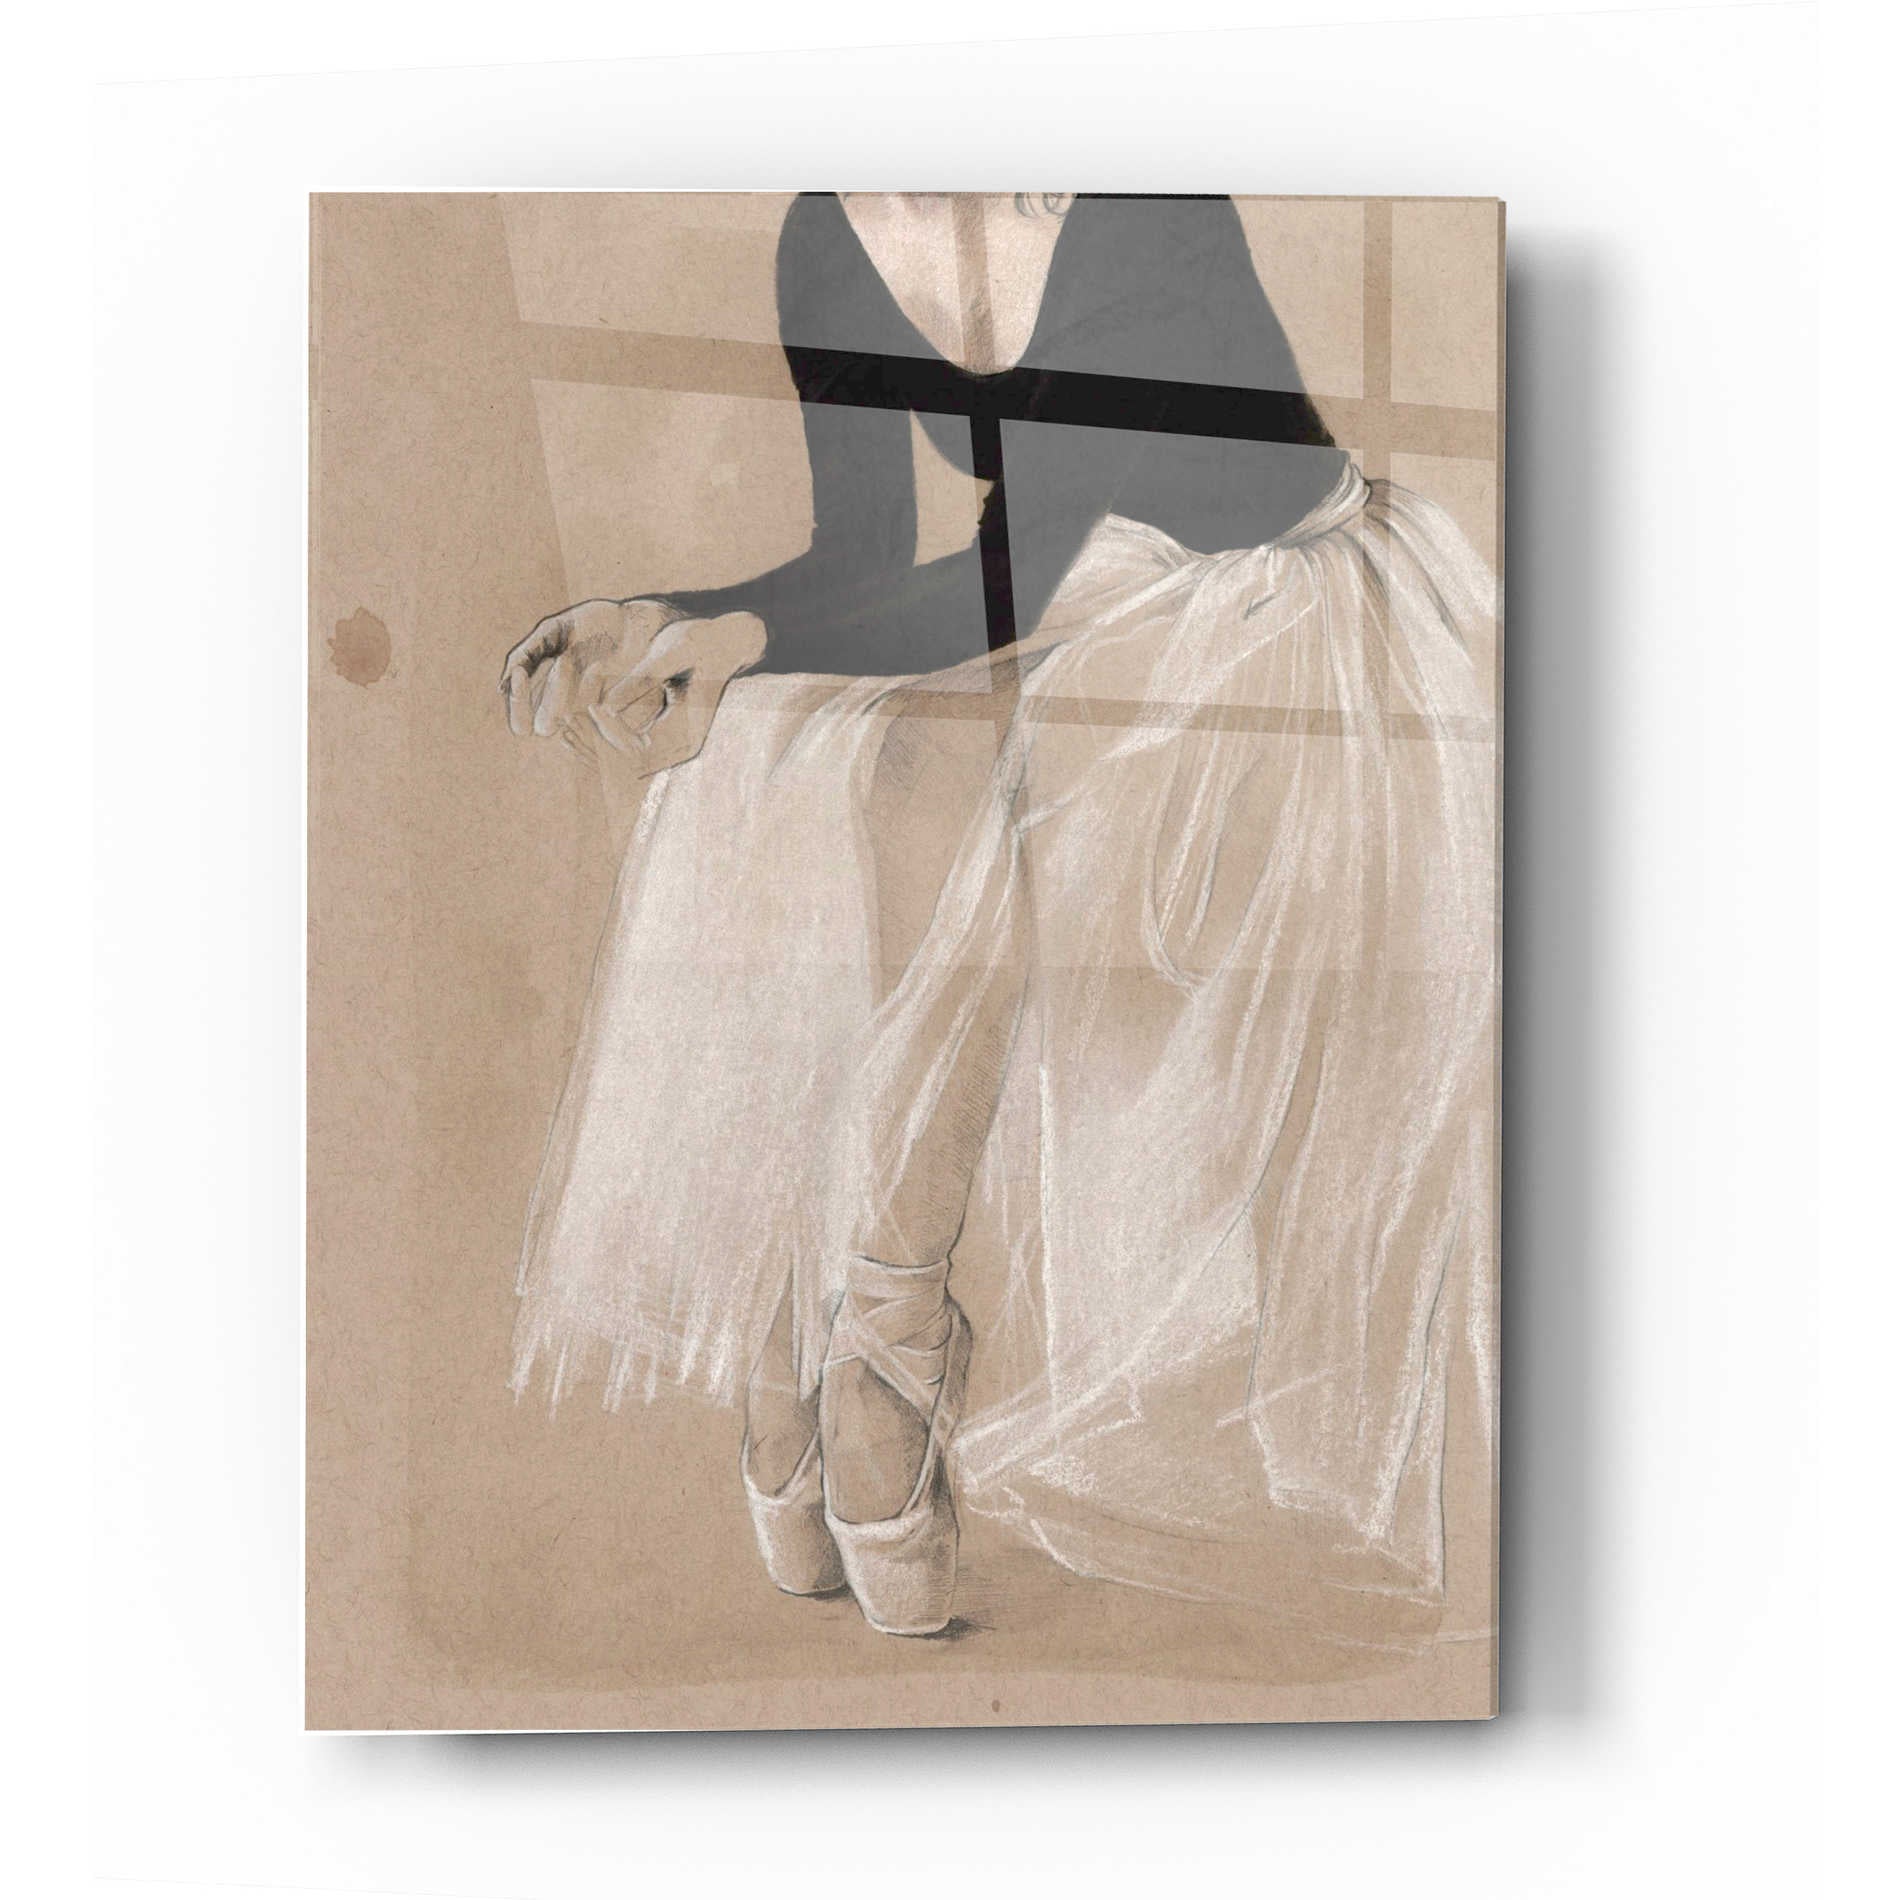 Epic Art 'Ballet Study I' by Jennifer Paxton Acrylic Glass Wall Art,12x16